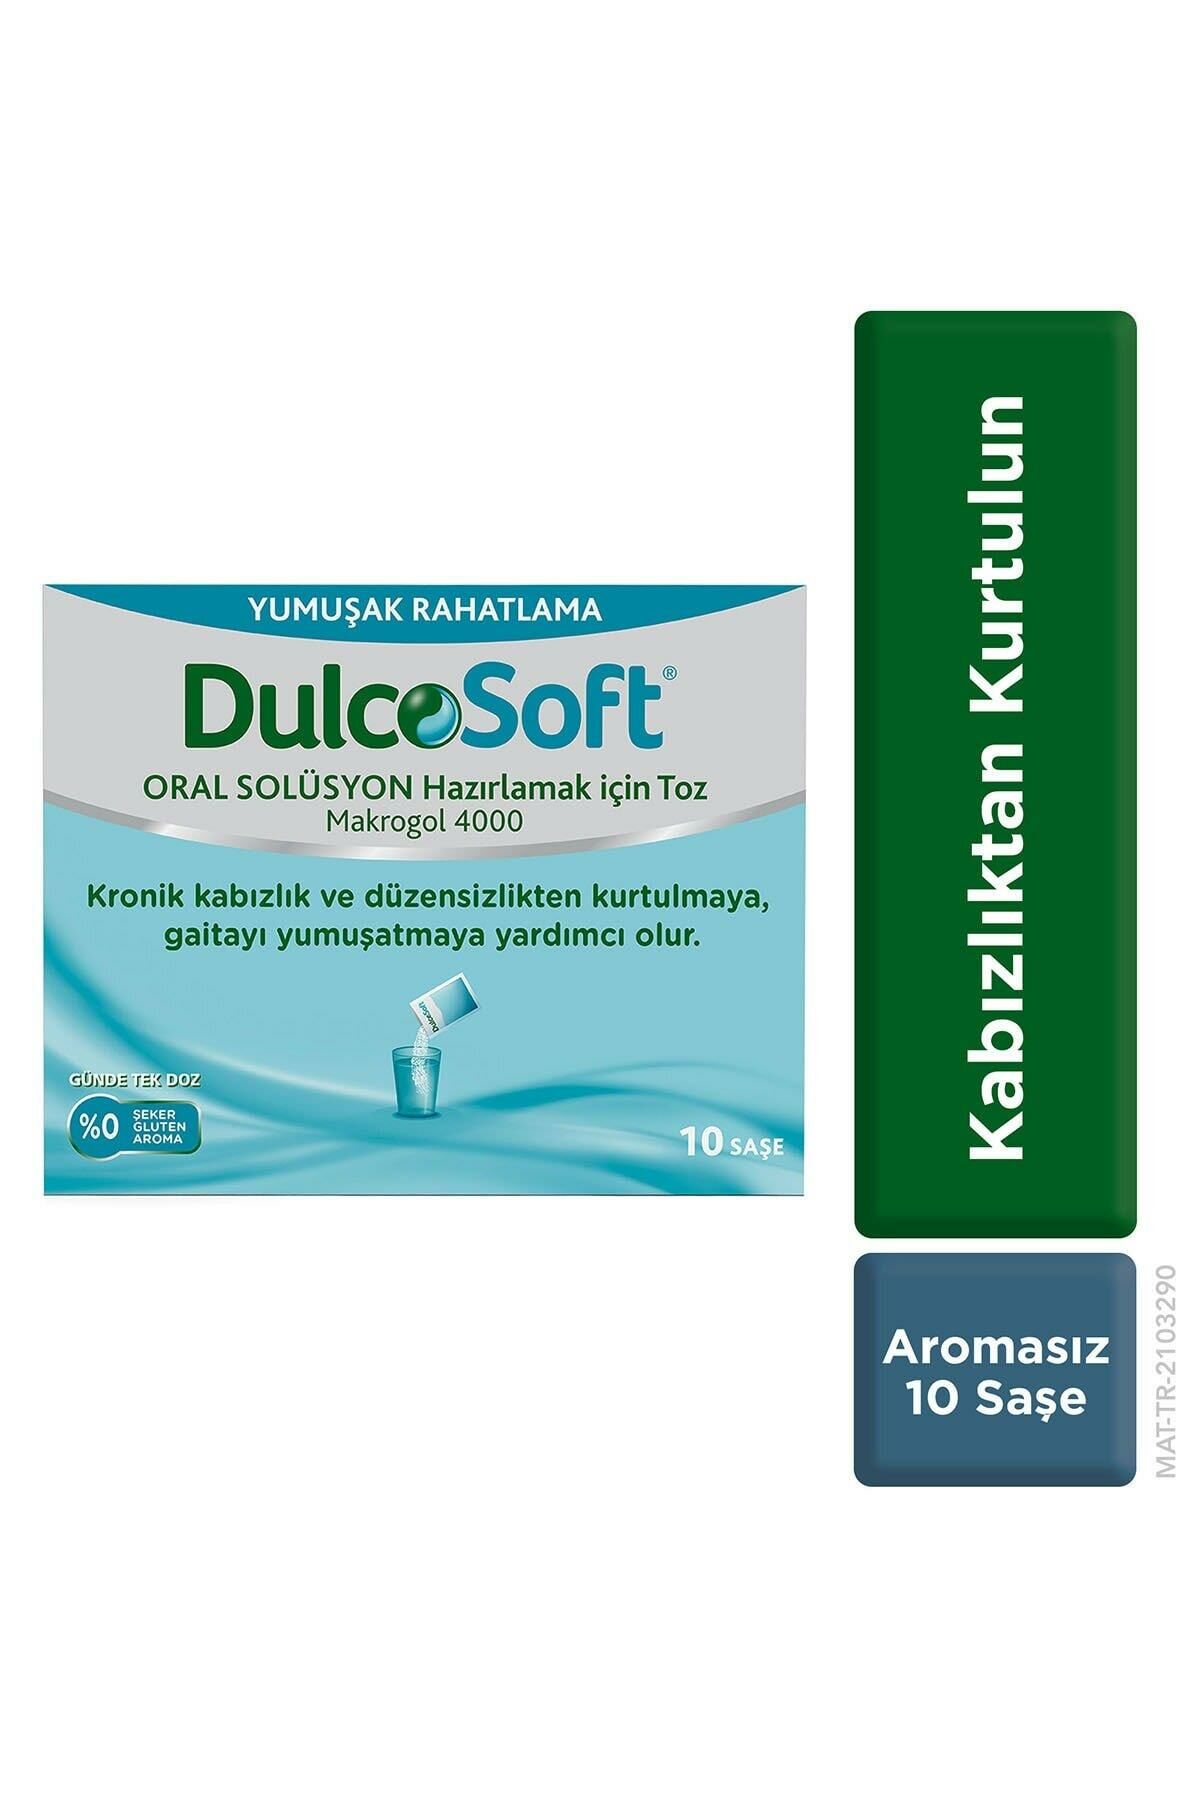 Dulcosoft Oral Solüsyon Hazırlamak İçin Toz Aromasız 10 Adet Saşe